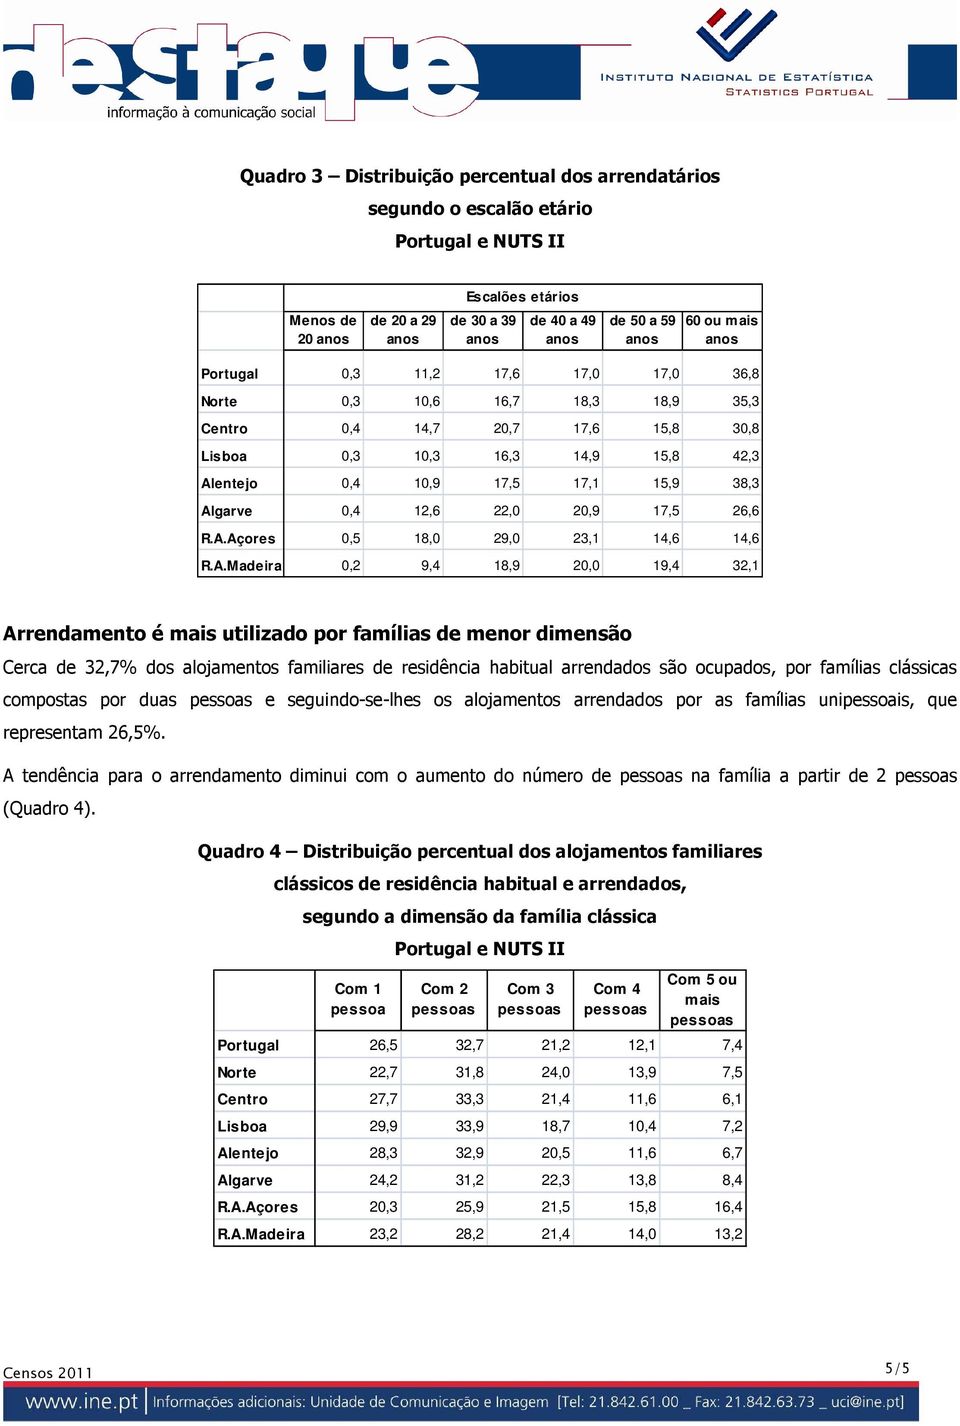 A.Madeira 0,2 9,4 18,9 20,0 19,4 32,1 Arrendamento é mais utilizado por famílias de menor dimensão Cerca de 32,7% dos alojamentos familiares de residência habitual arrendados são ocupados, por